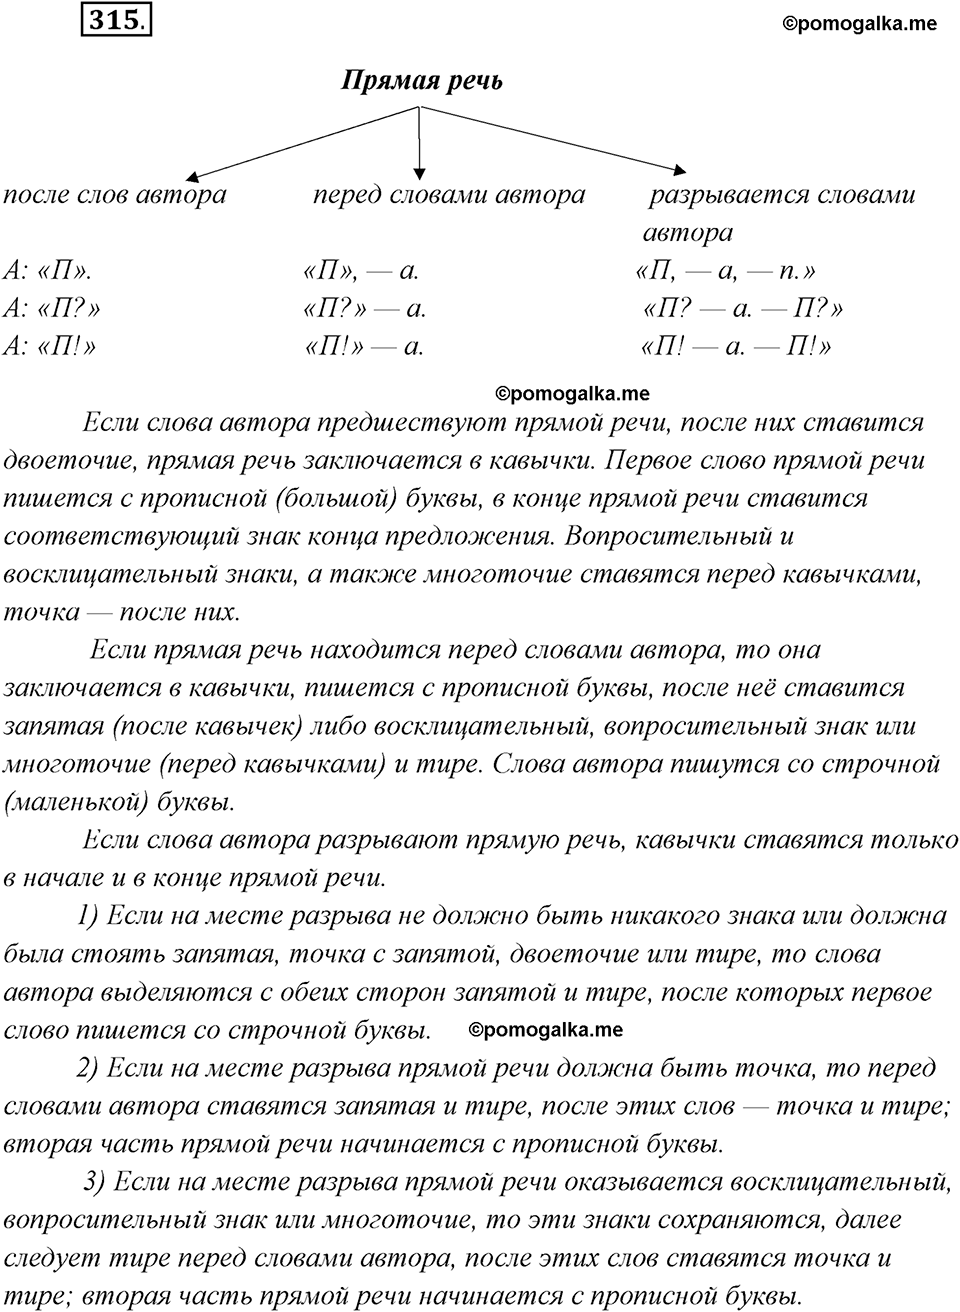 страница 203 упражнение 315 русский язык 8 класс Рыбченкова 2018 год